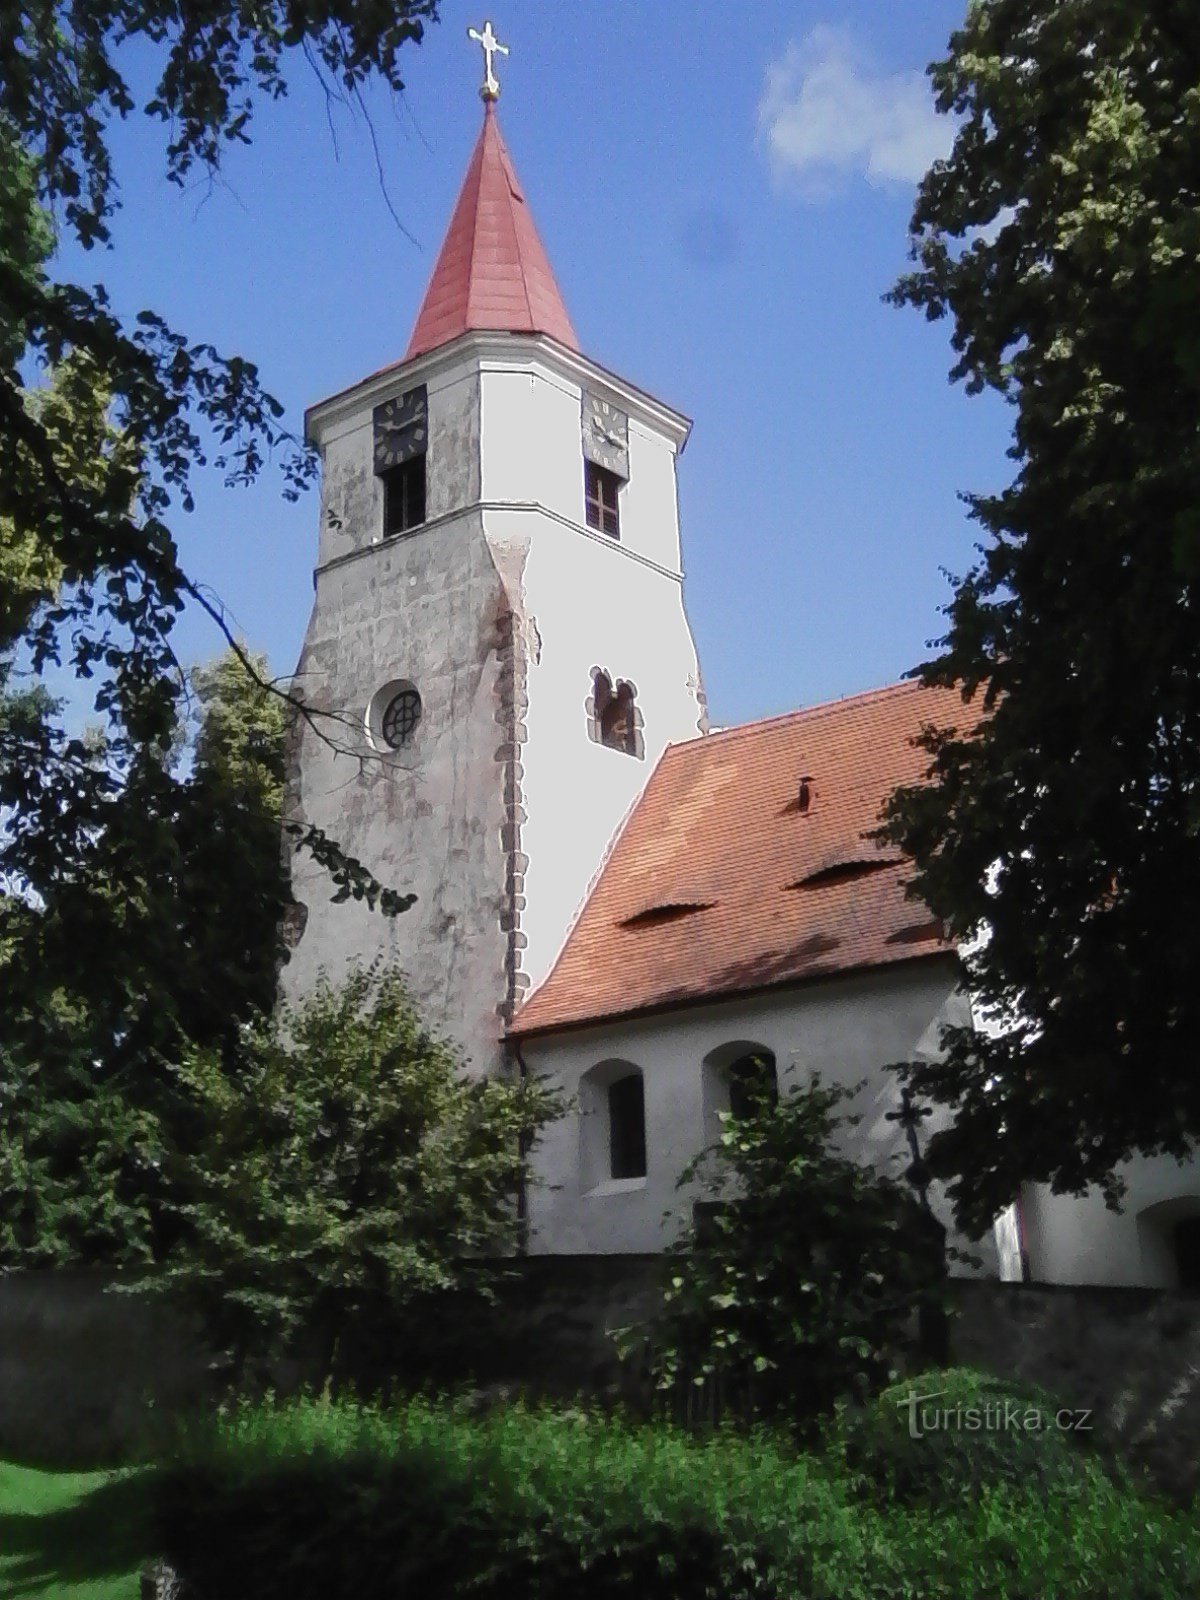 2. Biserica în stil romanic târziu Sf. Mikuláš în Nechvalice, probabil din jurul anului 1240.